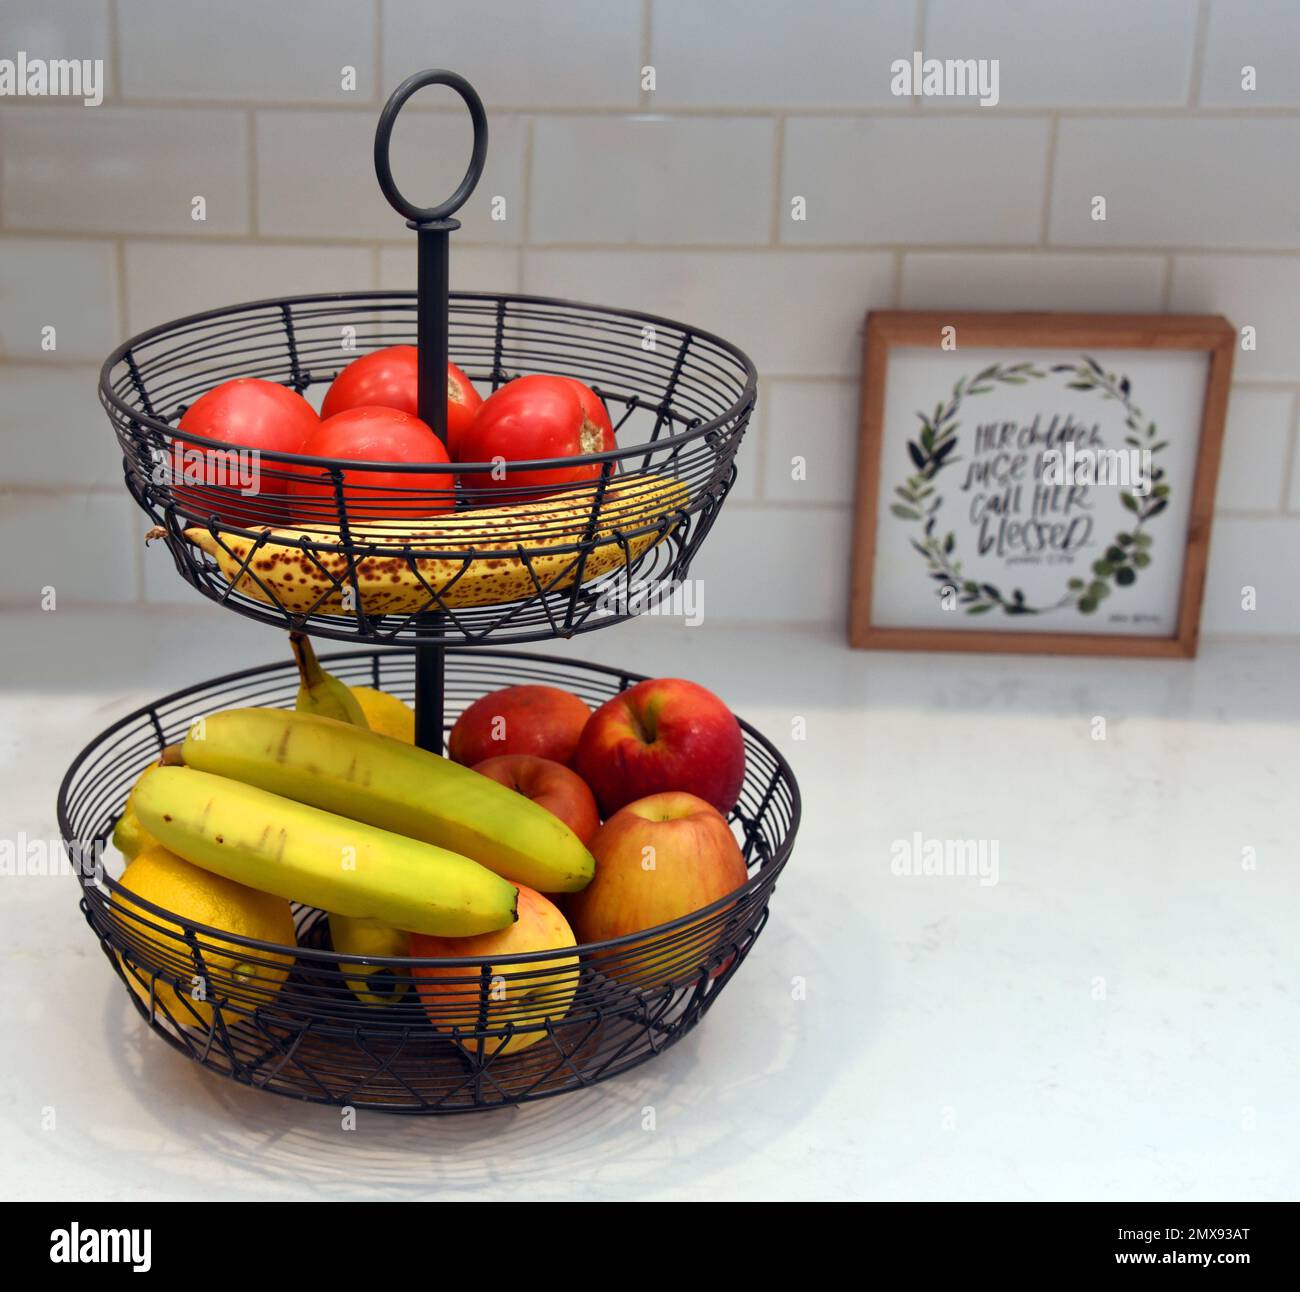 Dos niveles, negro, hierro, cesta de fruta se sienta en una encimera blanca de la cocina. Las frutas incluyen plátanos, tomate, manzanas y limón. Foto de stock